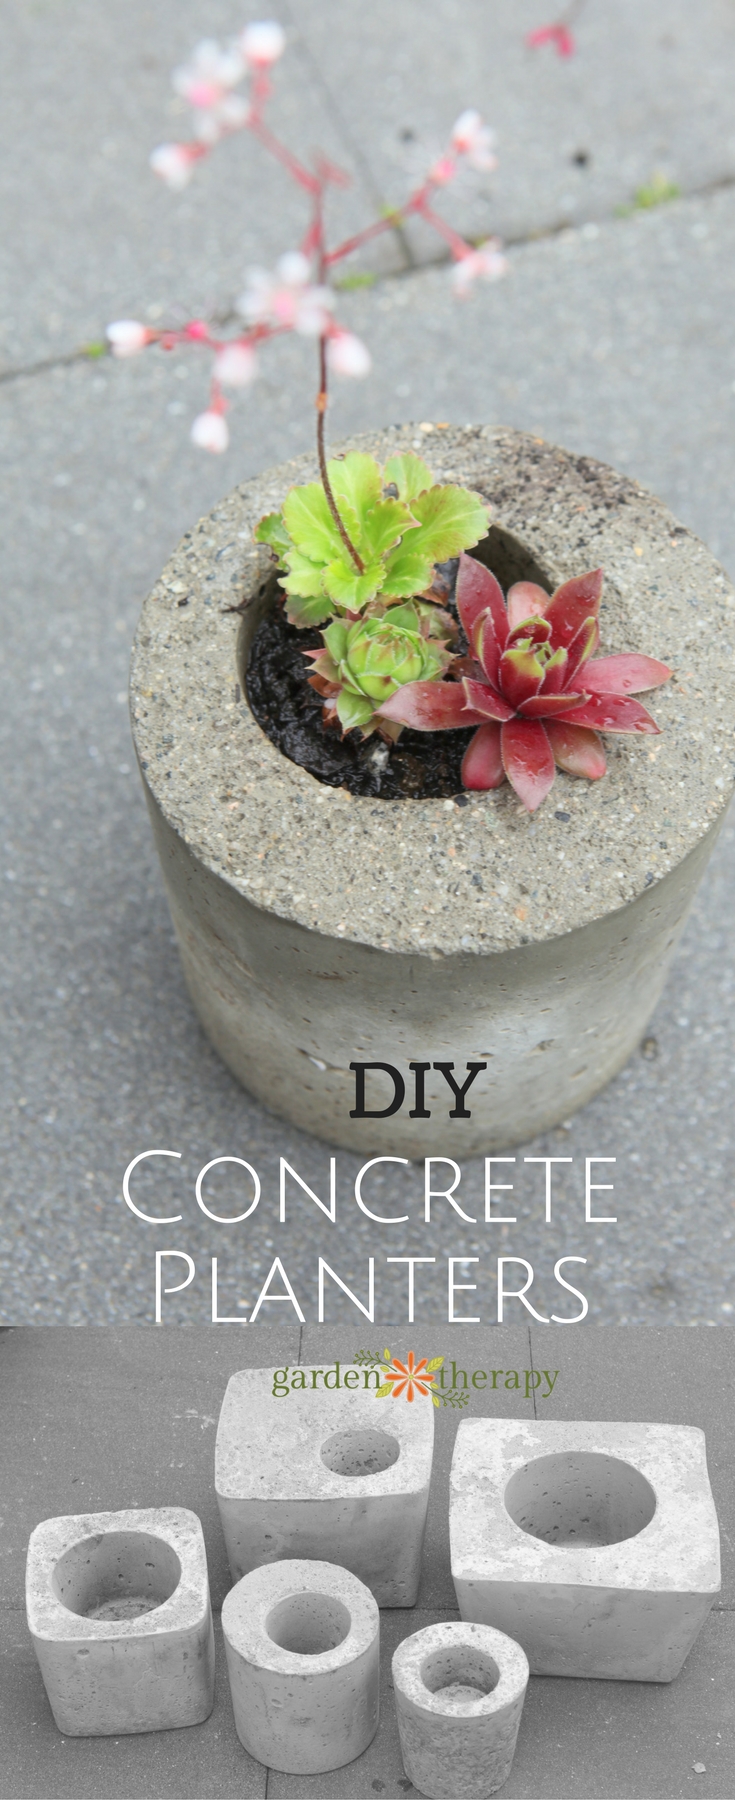 DIY Concrete Decor Ideas For Your Home and Garden